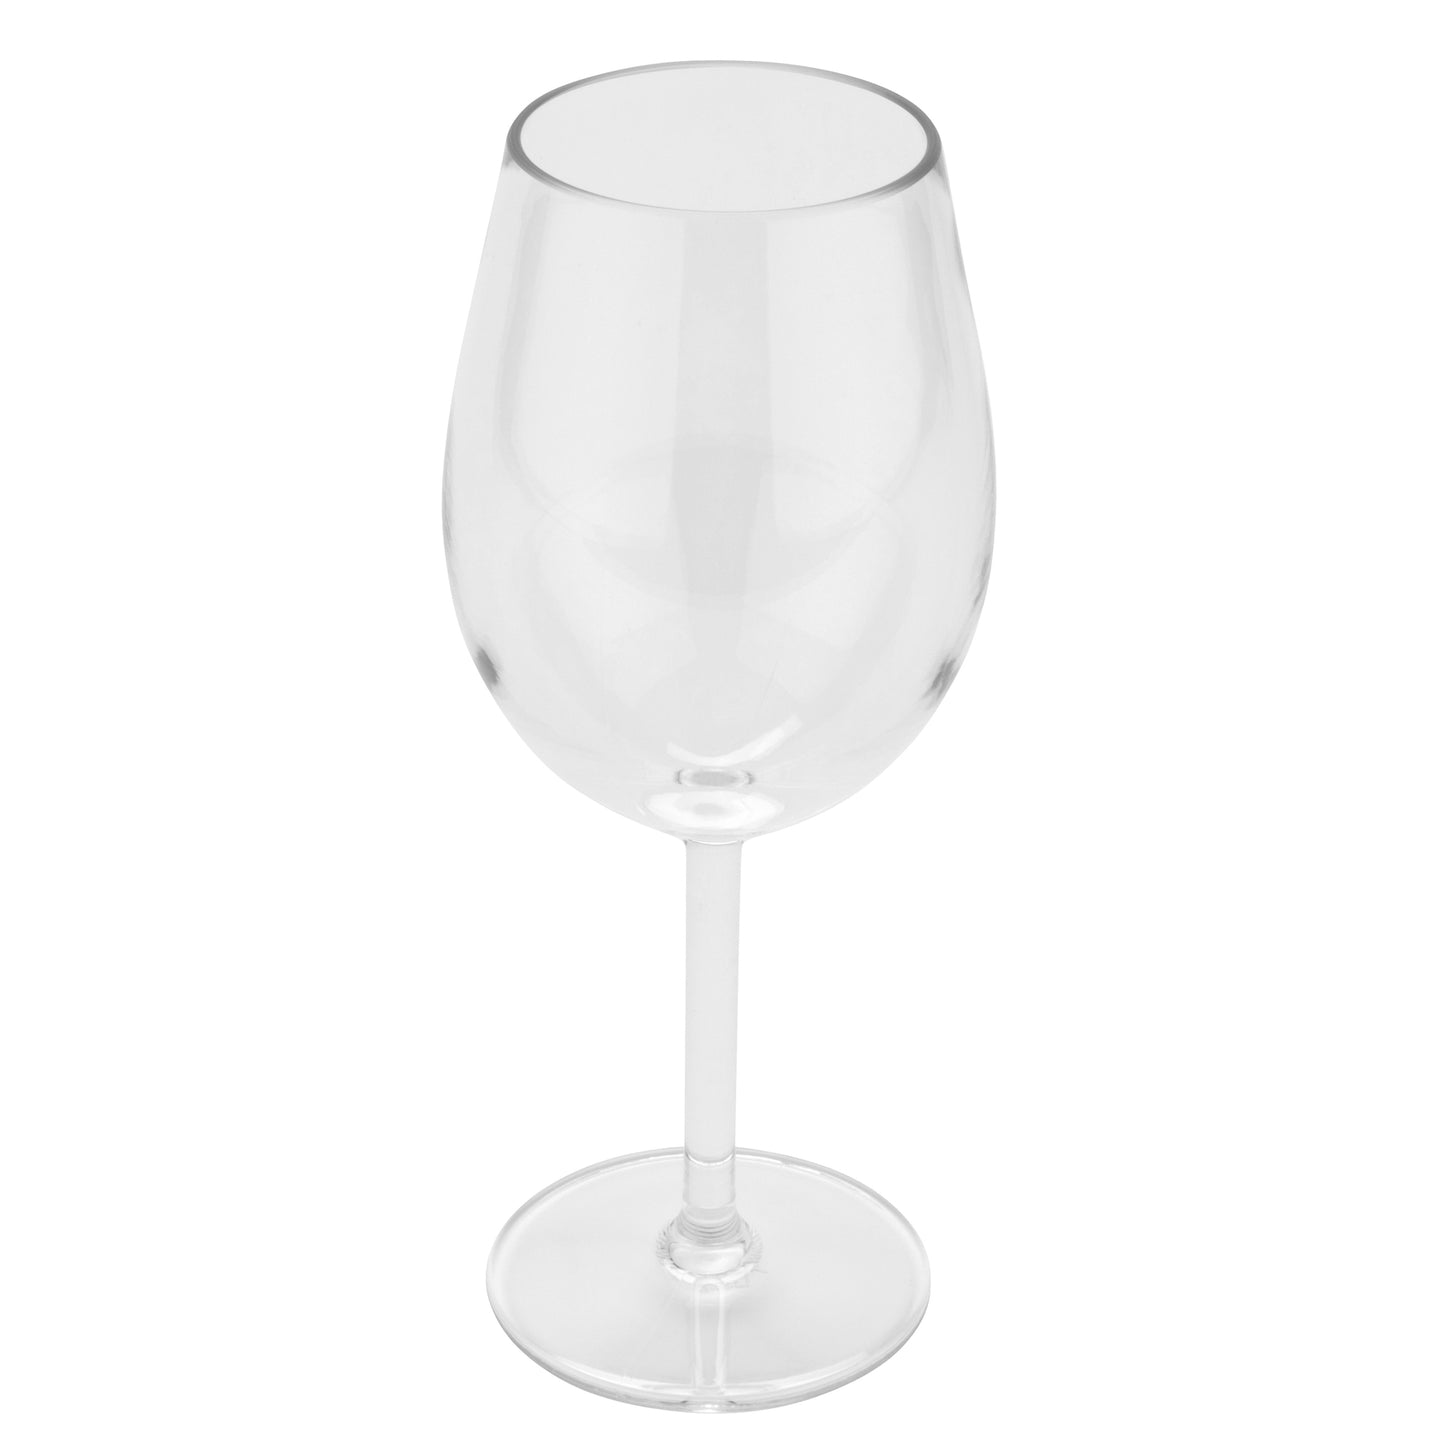 15 oz. (16 oz. Rim-Full), 3.75" Top Dia., Classic Wine Glass, 8.5" Tall, Plastic Tritan GET, Social Club (12 Pack)